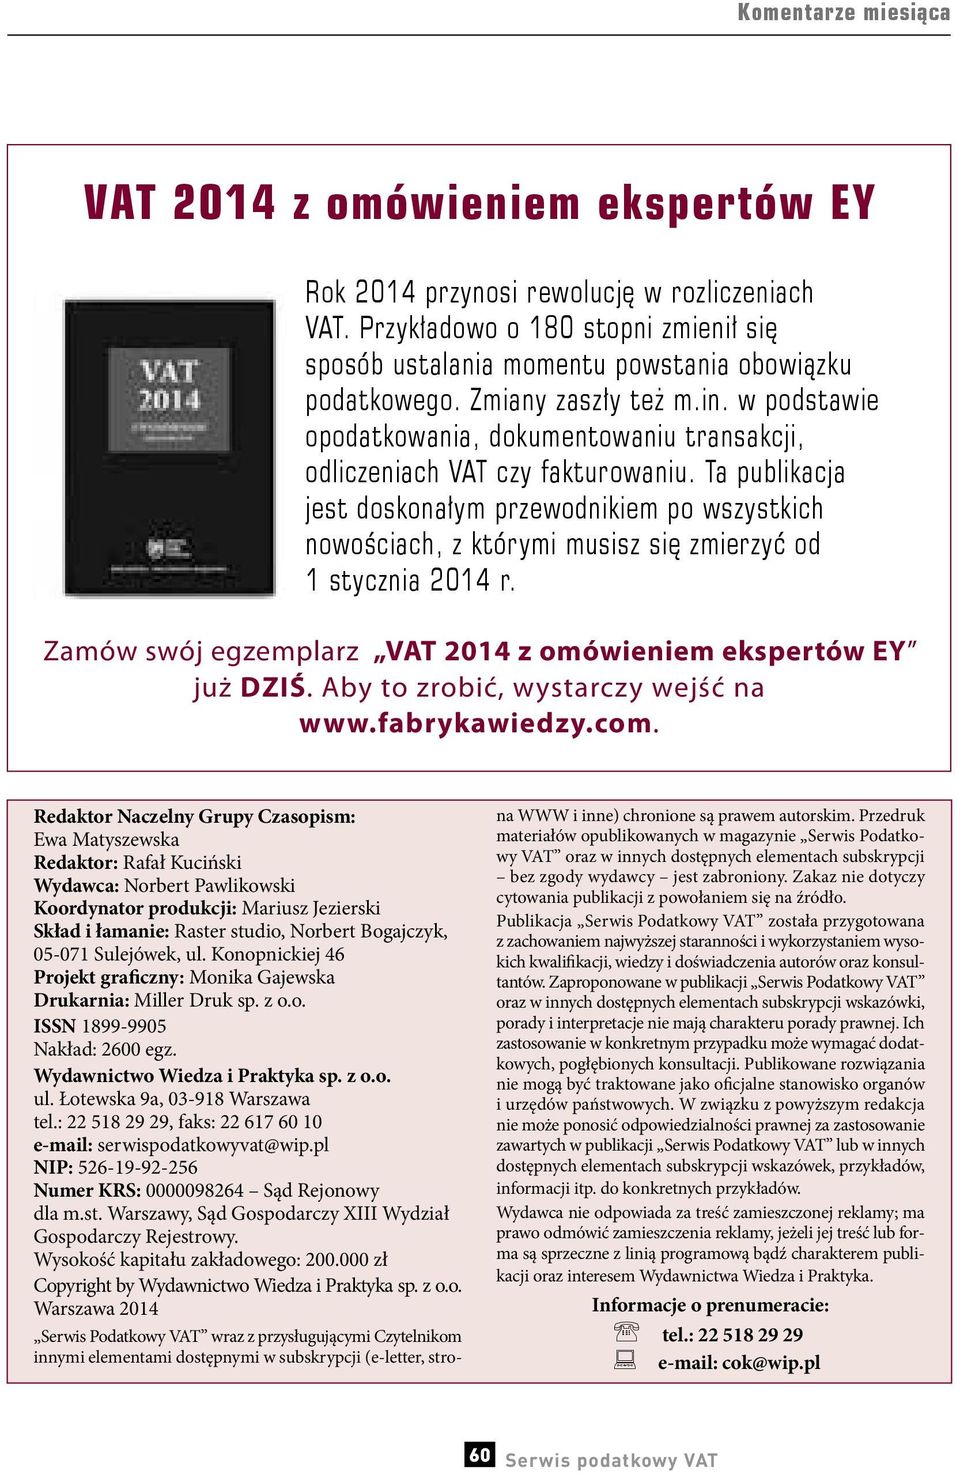 Ta publikacja jest doskonałym przewodnikiem po wszystkich nowościach, z którymi musisz się zmierzyć od 1 stycznia 2014 r. Zamów swój egzemplarz VAT 2014 z omówieniem ekspertów EY już DZIŚ.